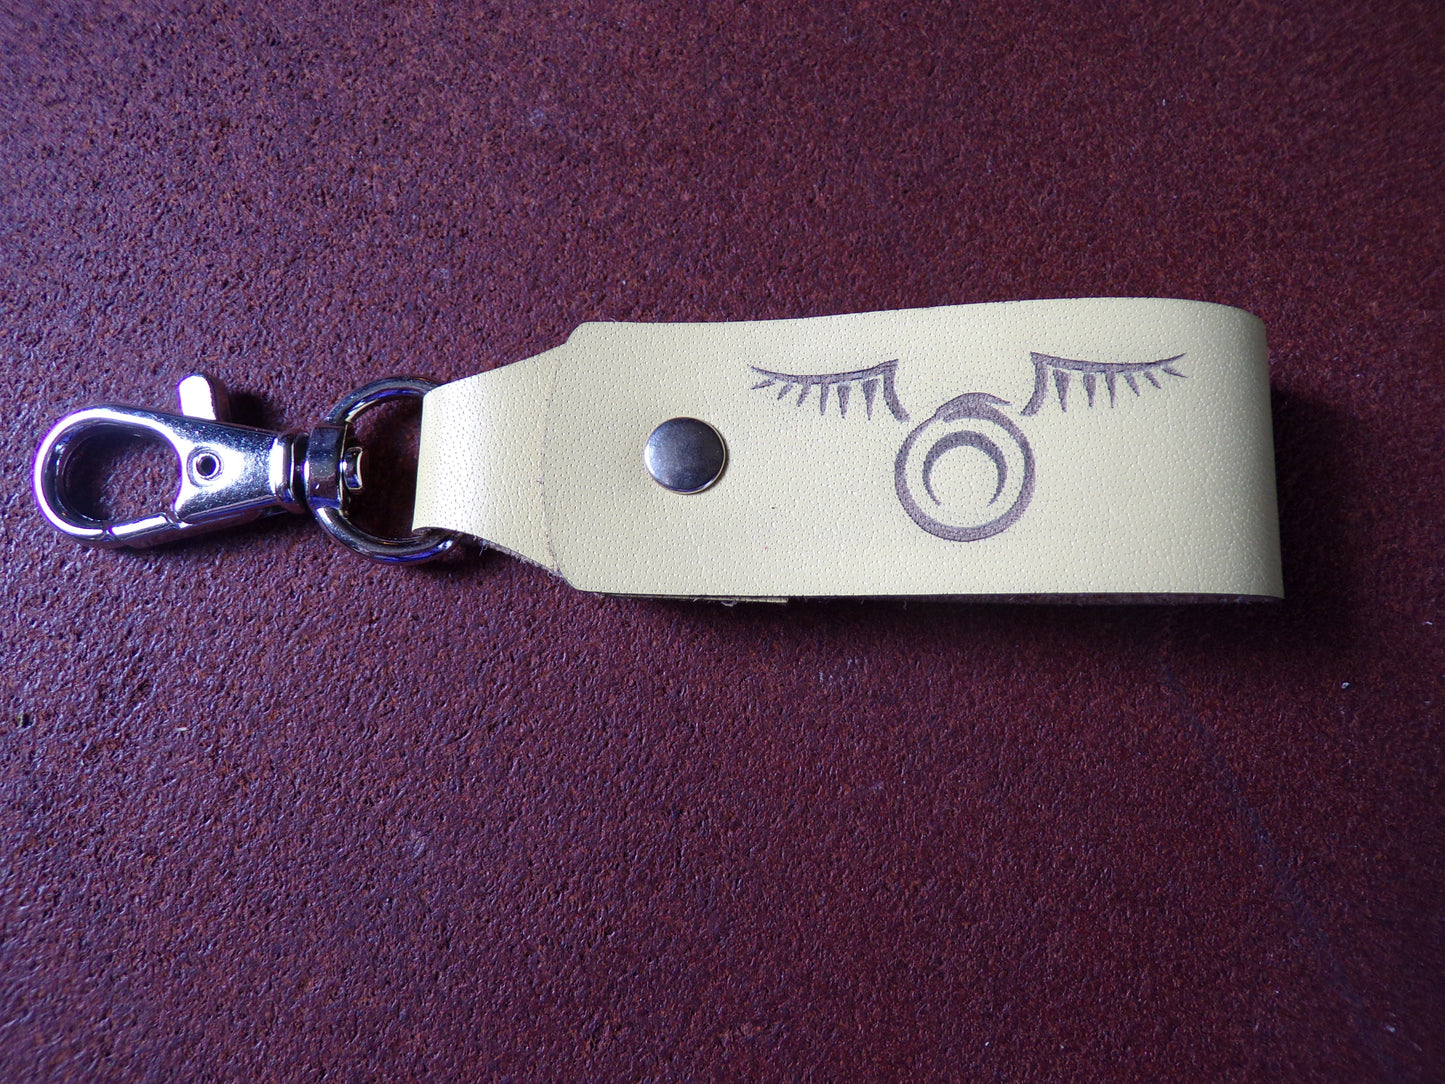 Styx Belt Keychain Clank Army Yellow leather